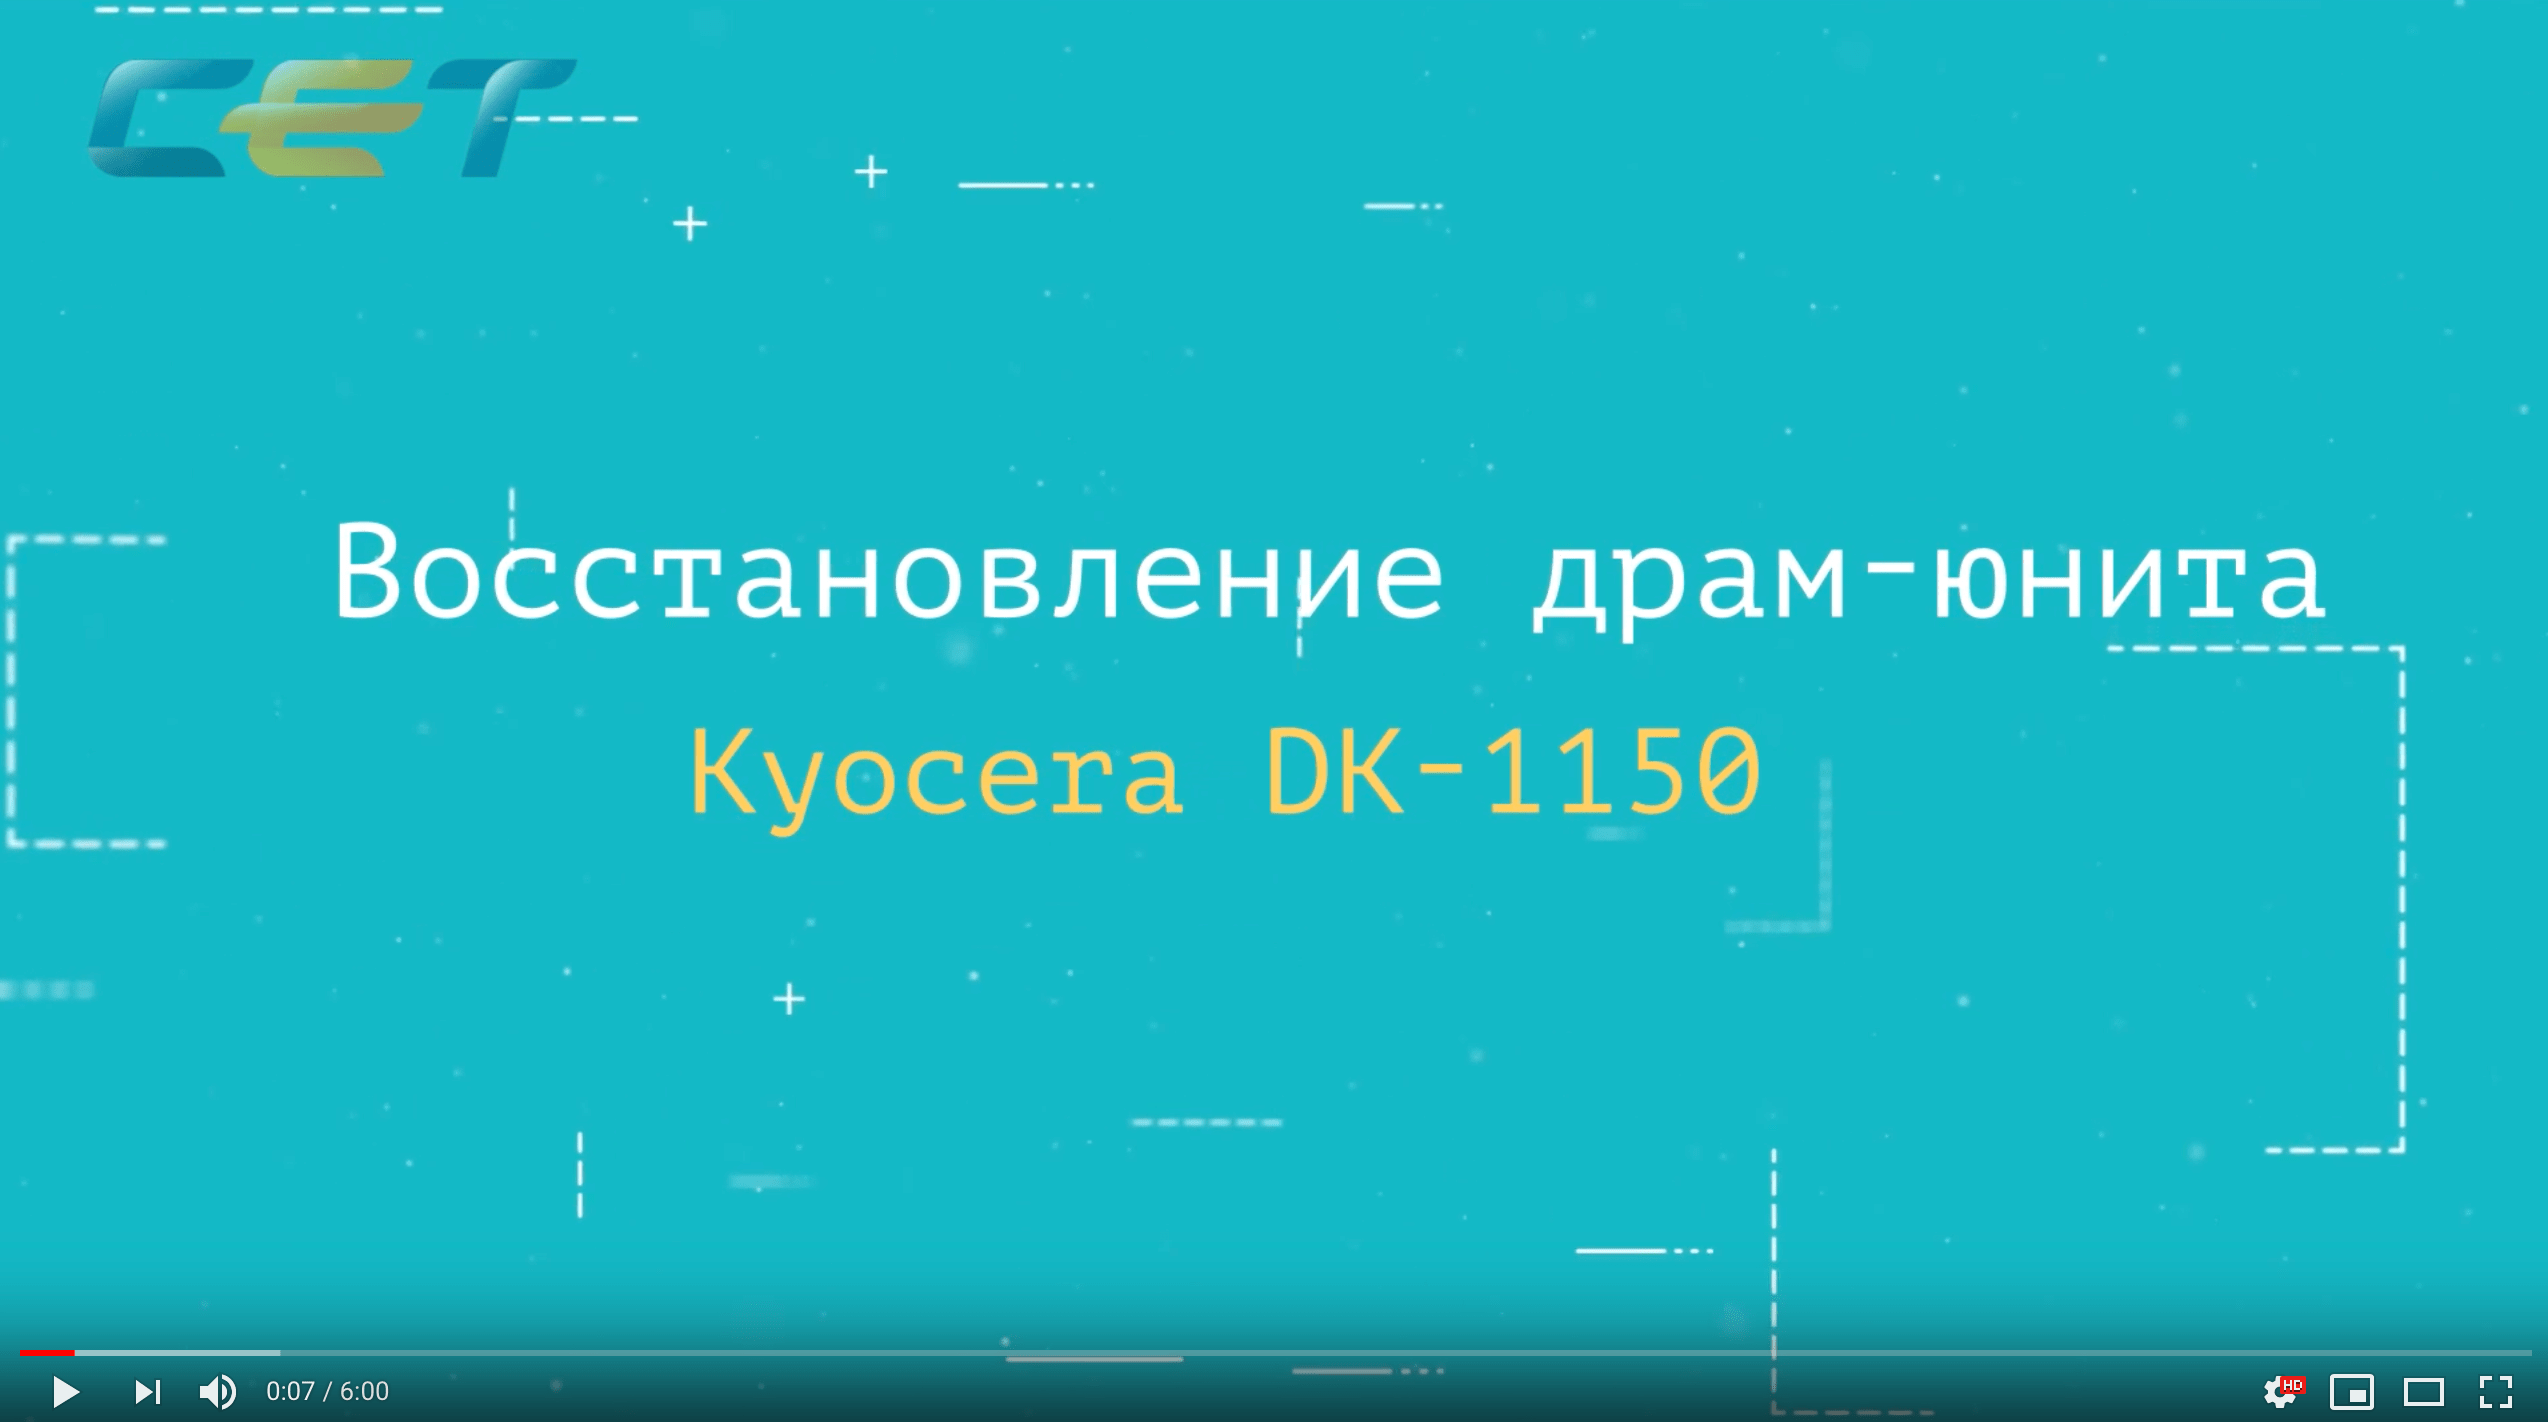 Восстановление драм-юнитов Kyocera DK-1150